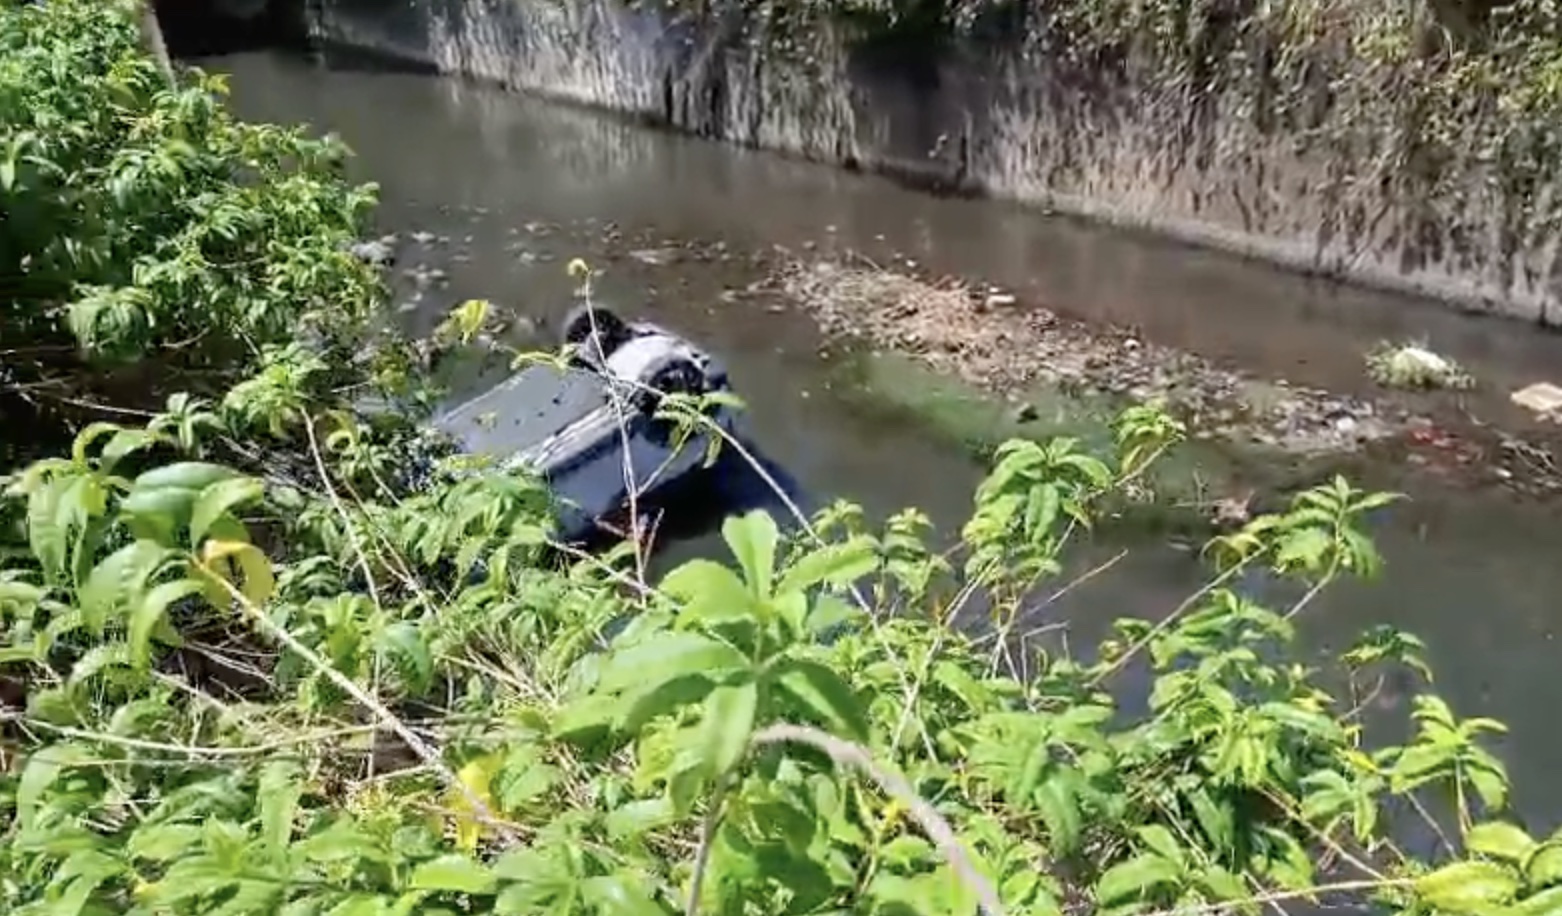     Spectaculaire accident à Fort-de-France : une voiture termine dans le Canal Levassor

